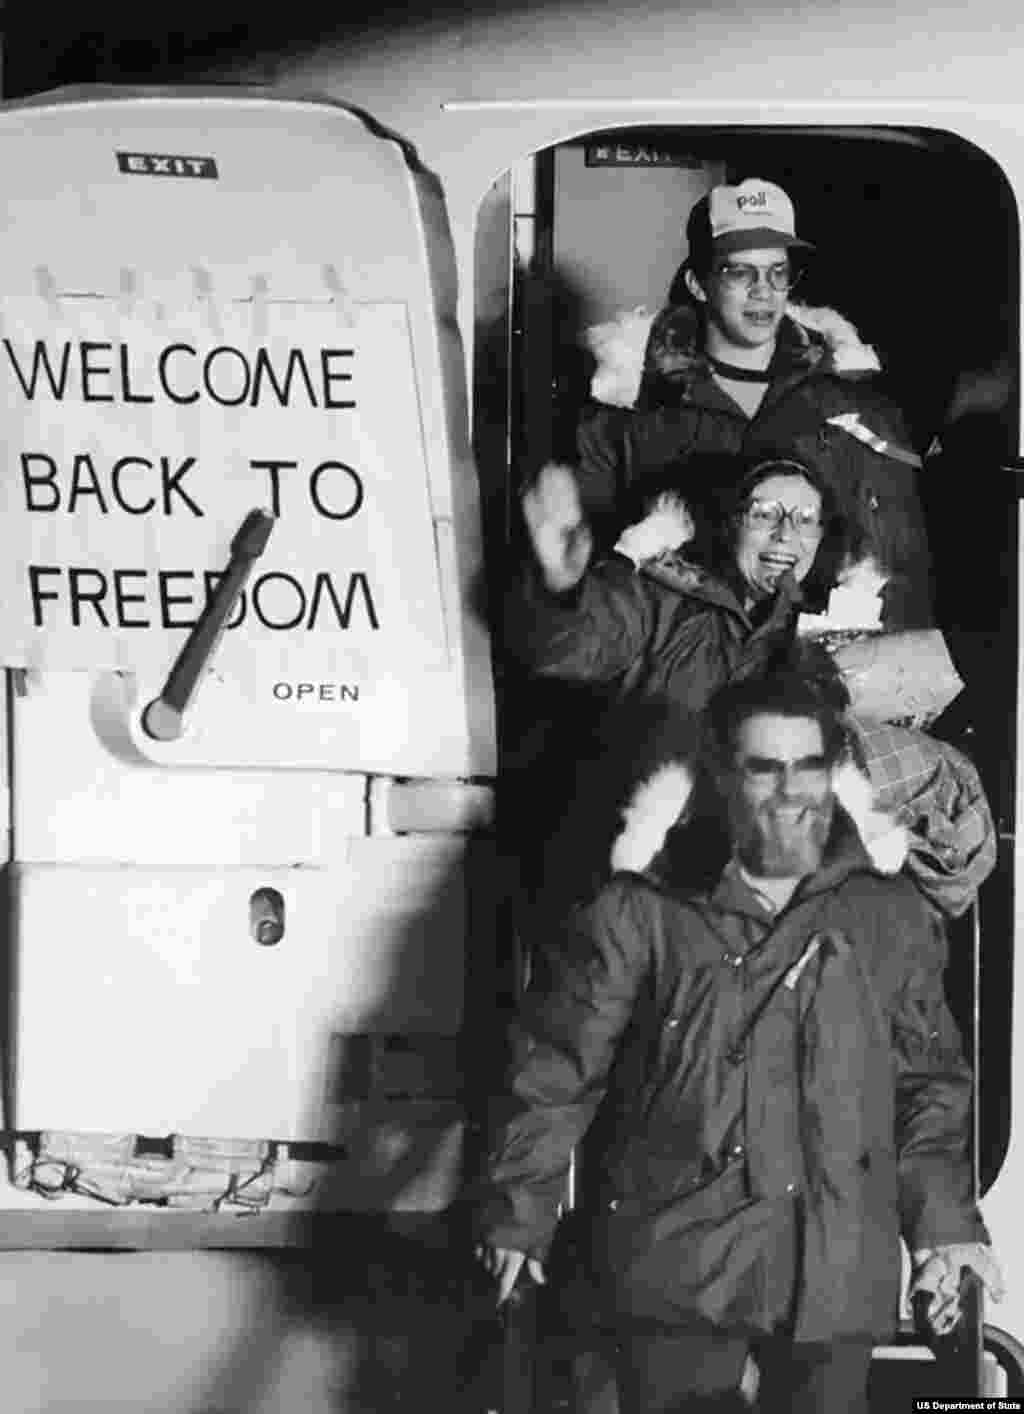 پس از مذاکراتی غیرمستقیم به میانجی&zwnj;گری الجزایر، باقی گروگان&zwnj;های آمریکایی در ۳۰ دی ماه ۱۳۵۹، پس از ۴۴۴ روز آزاد و وارد پایگاه هوایی ویسبادن آلمان شدند. آزادی این گروگان&zwnj;ها تنها دقایقی پس از ادای سوگند ریاست جمهوری رونالد ریگان بود.